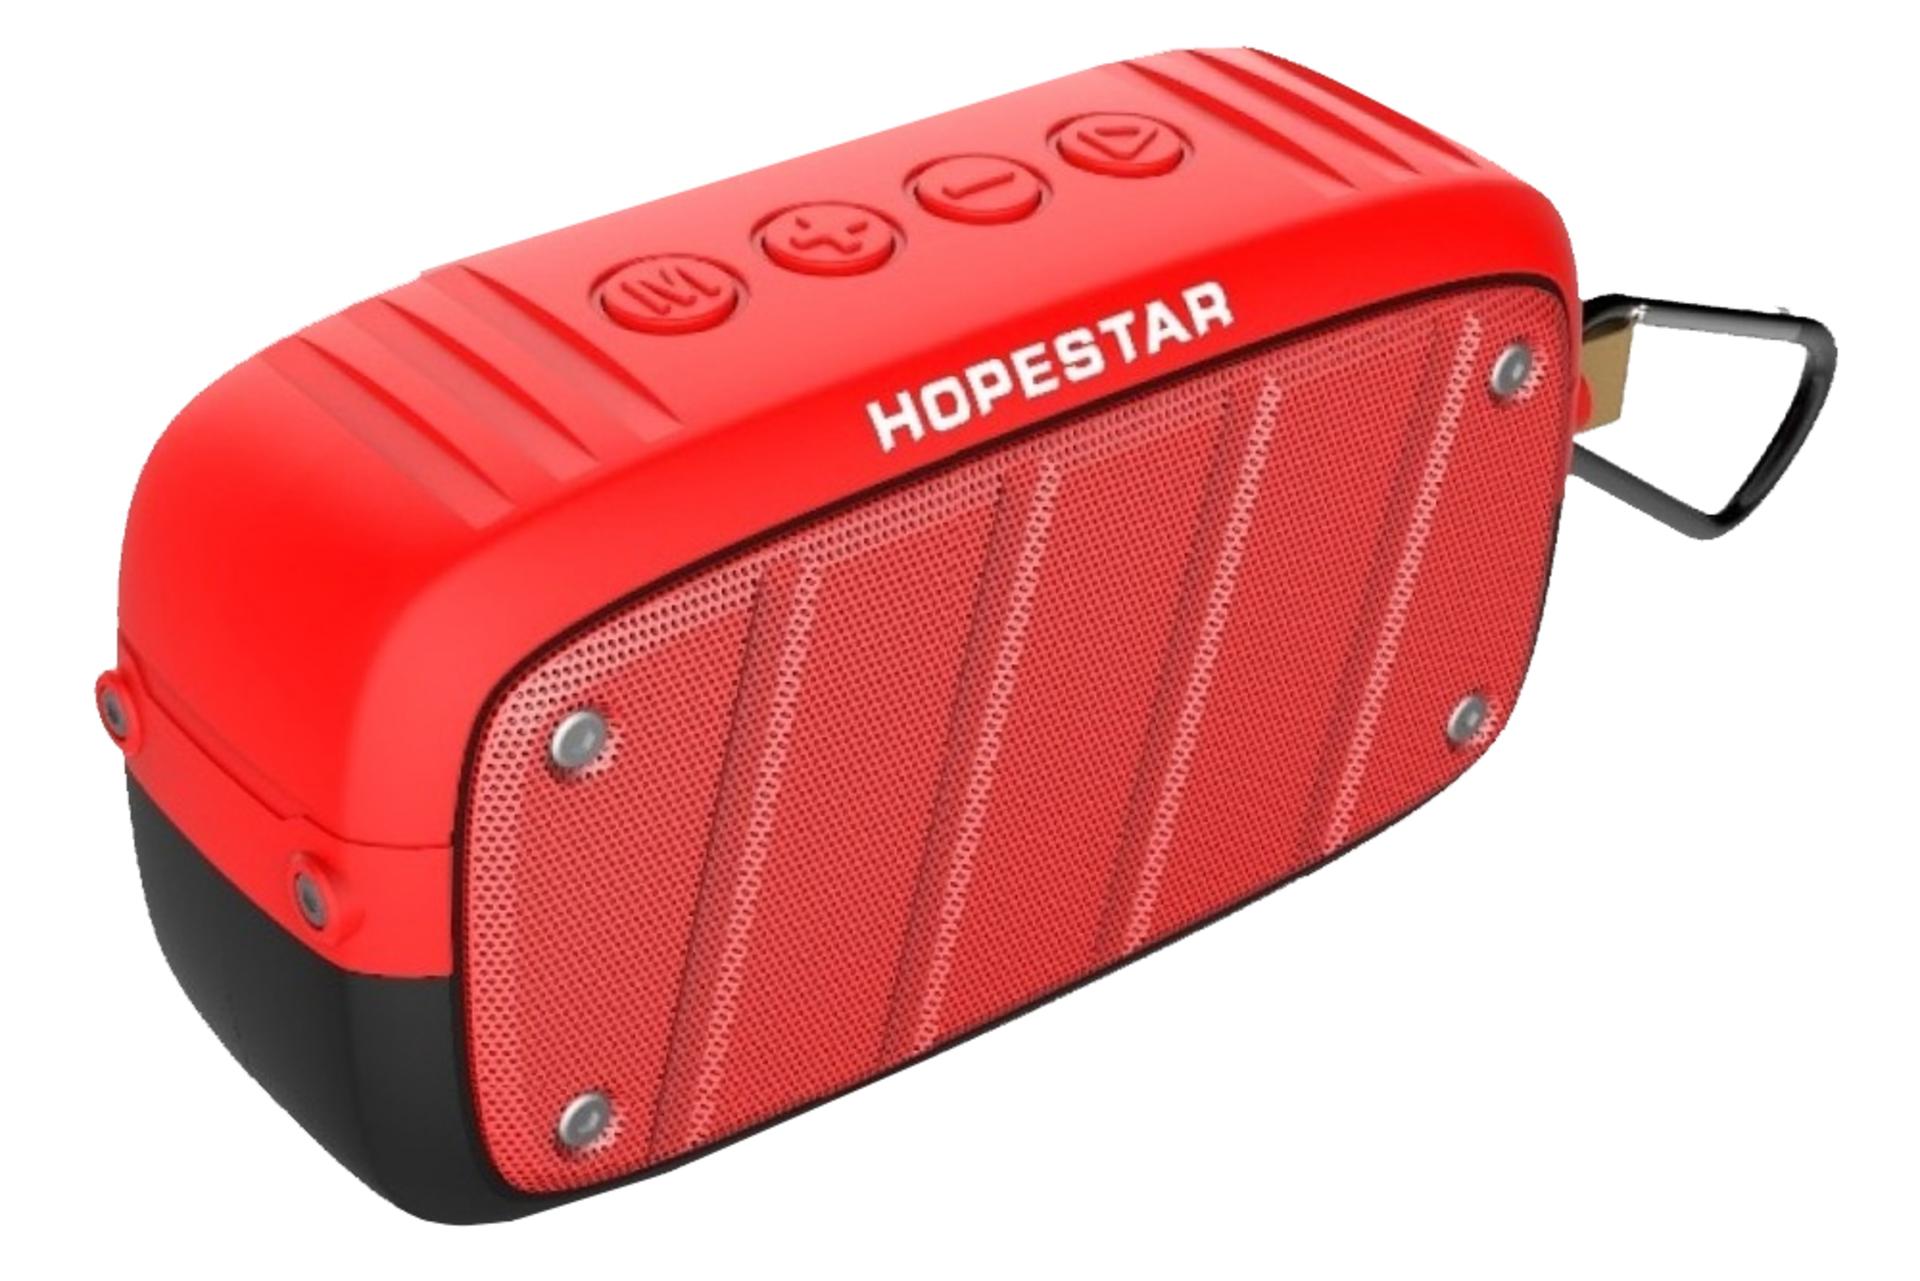 اسپیکر هوپ استار Hopestar T5 قرمز